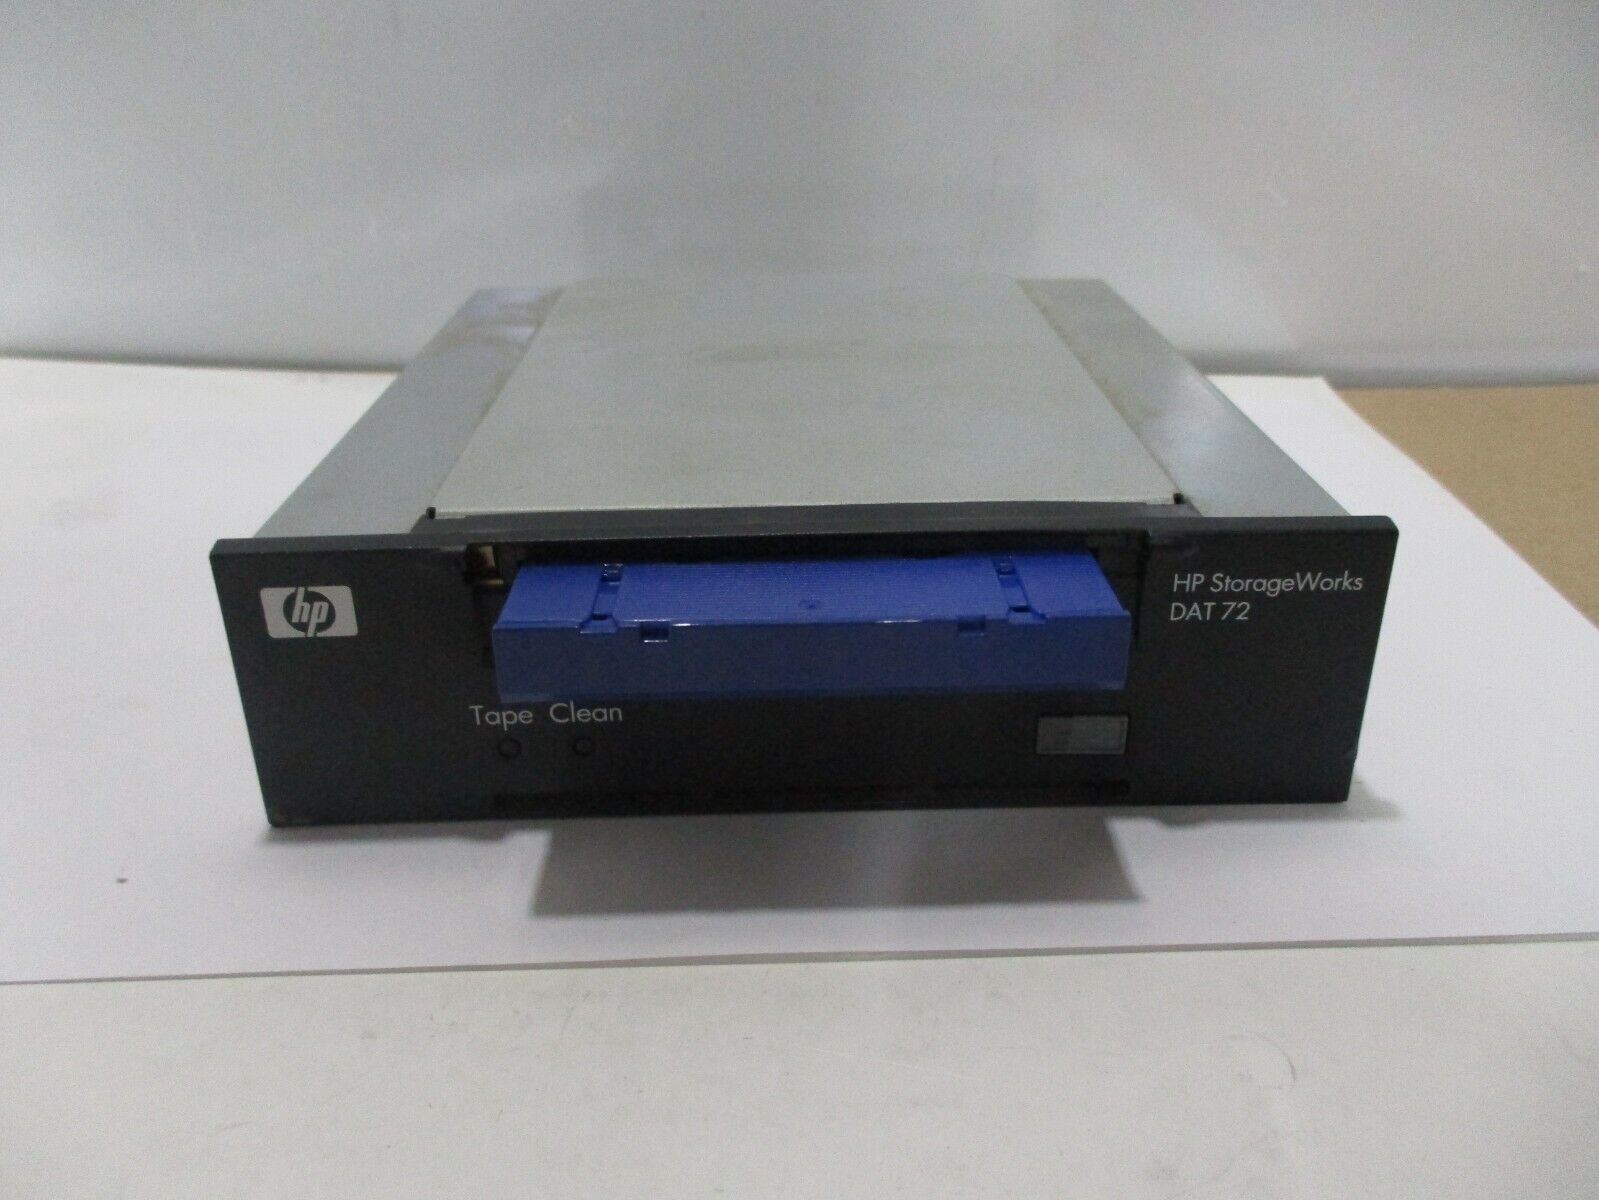 HP Q1522B StorageWorks DAT 72 Internal Tape Drive DW009-60005 w/ HP DAT 72 C8010